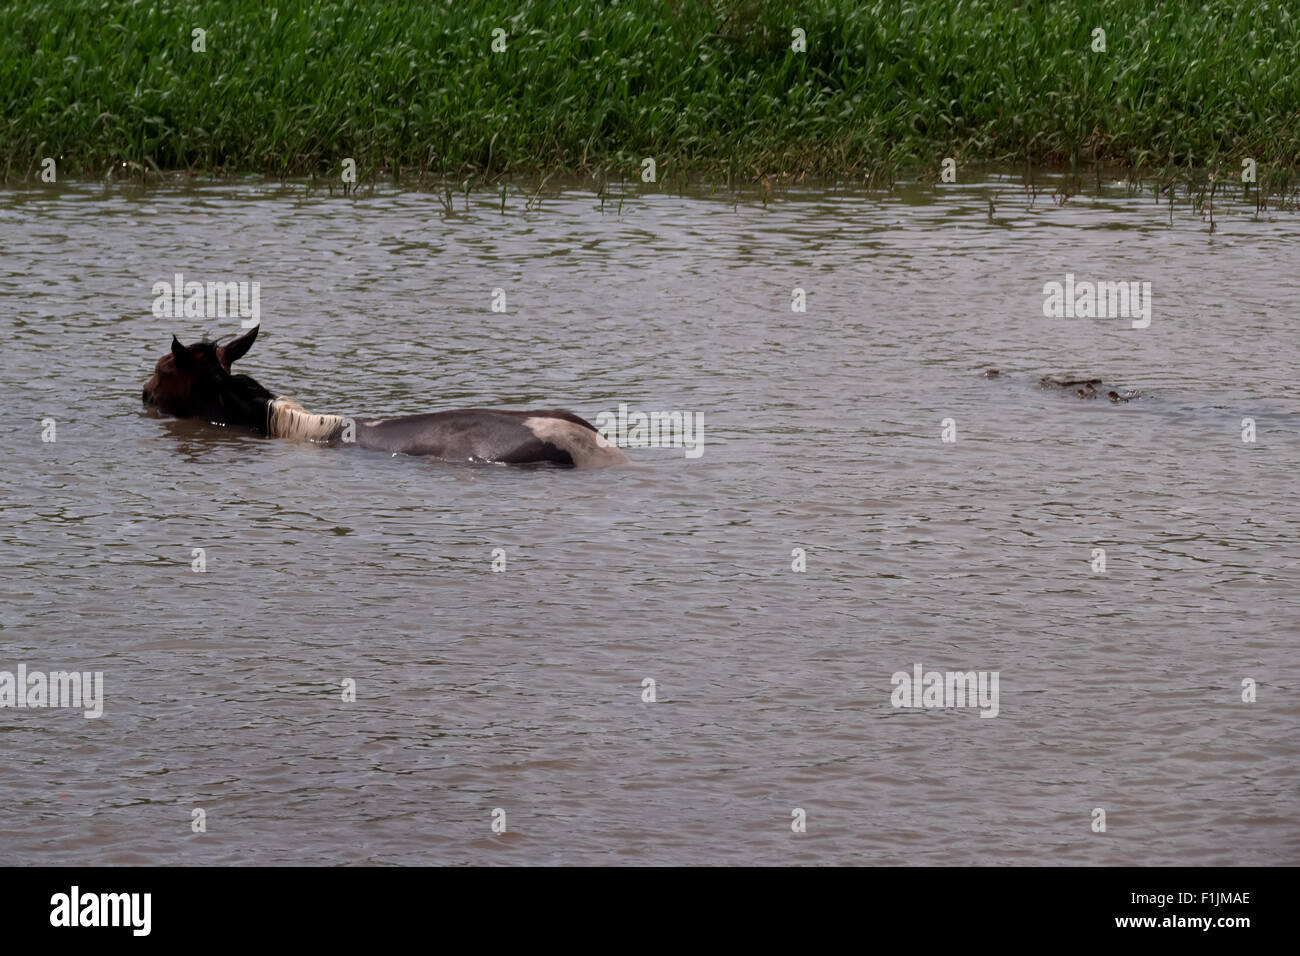 American crocodile, bird and horse in river, Rio Tarcoles, Costa Rica. Wild fauna, wildlife, nature, animals, rain Stock Photo